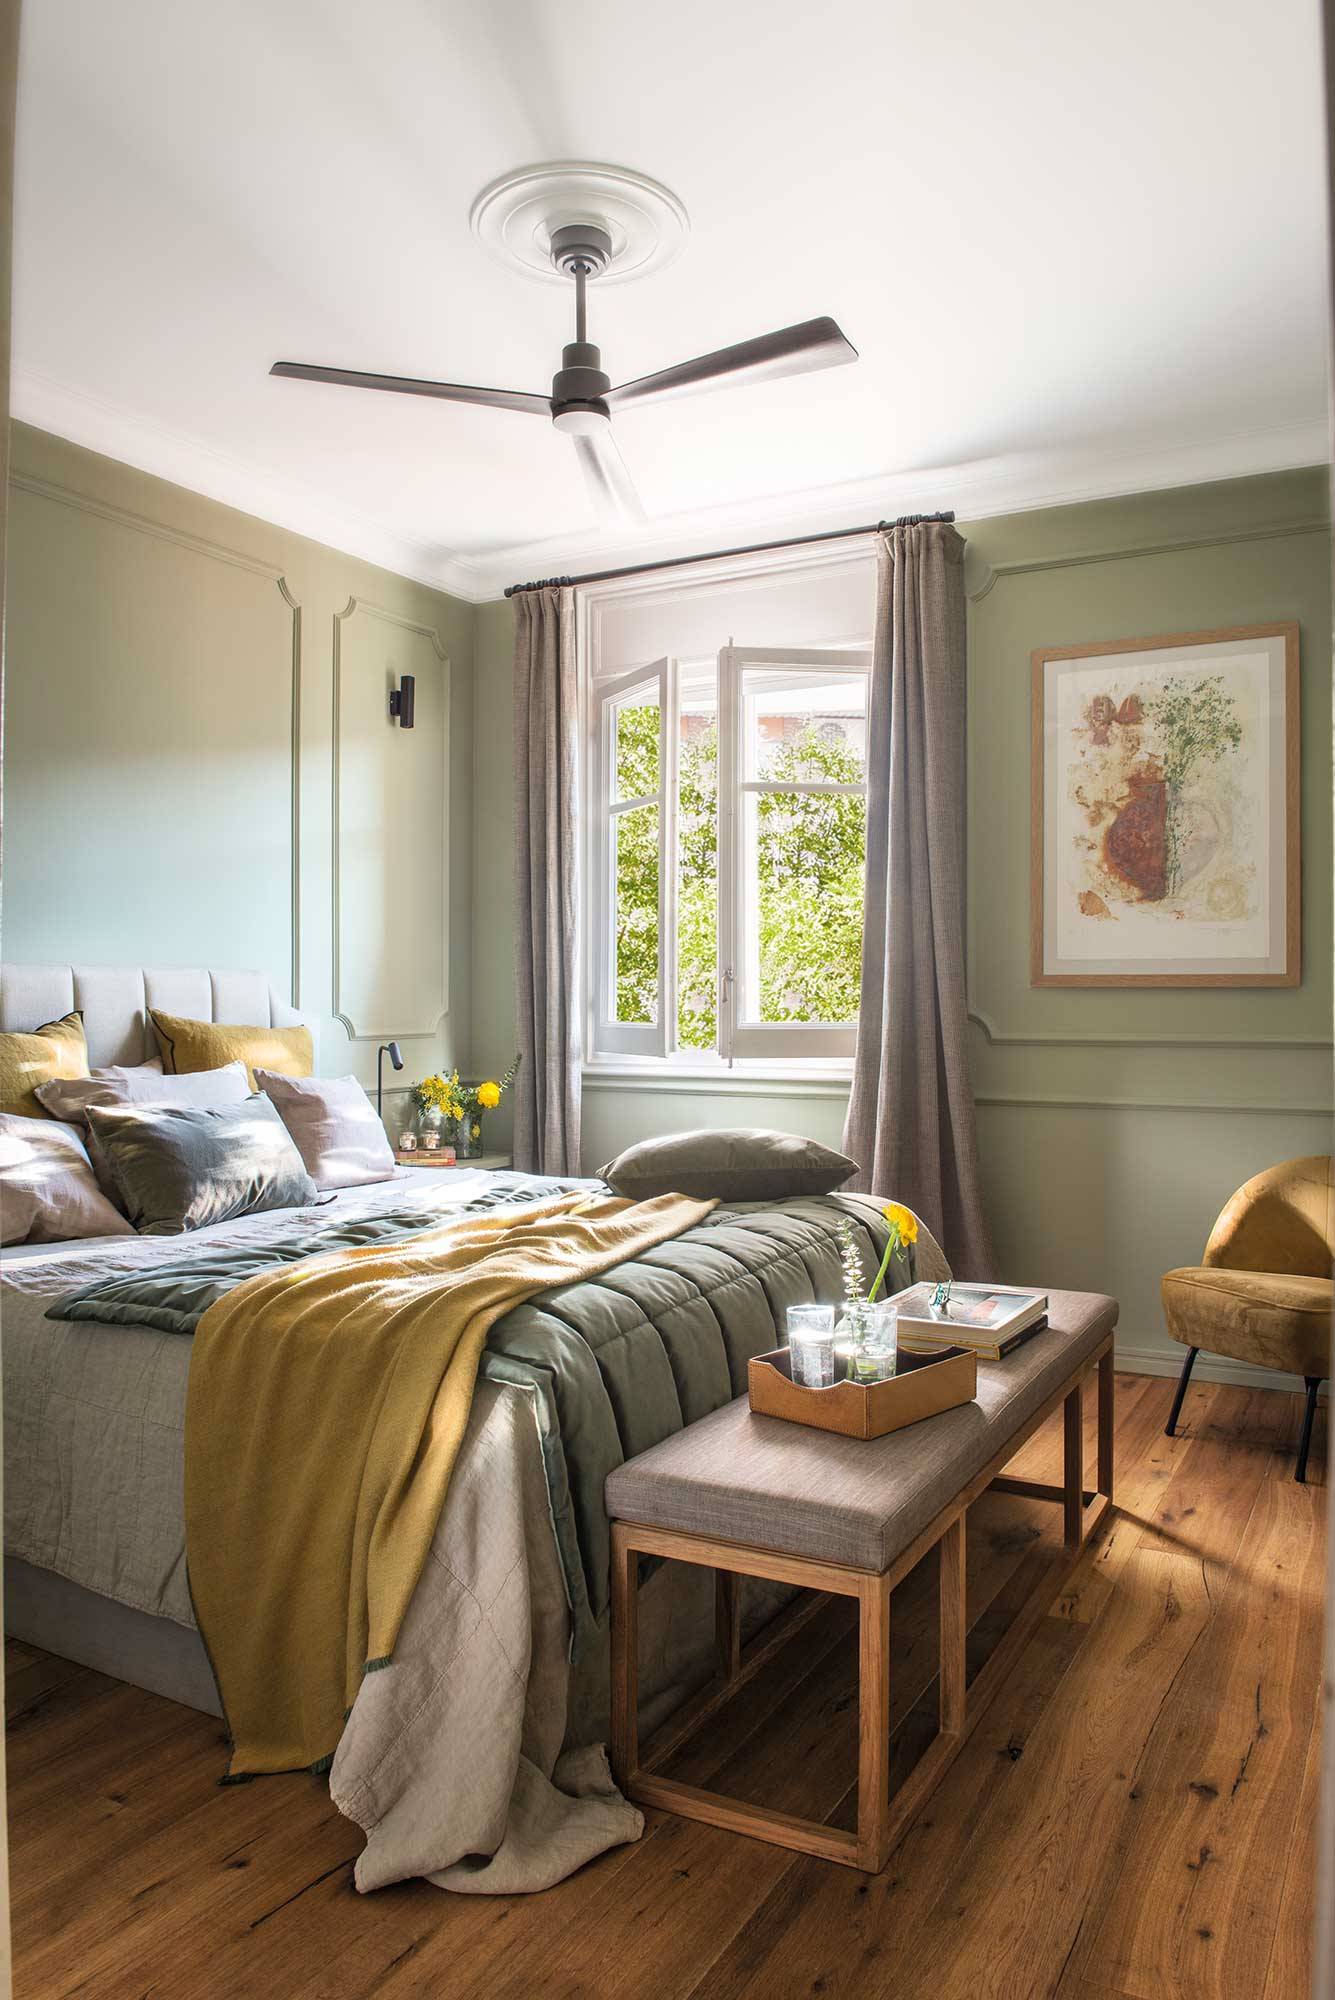 Dormitorio con boiserie pintada en verde suave_00500538